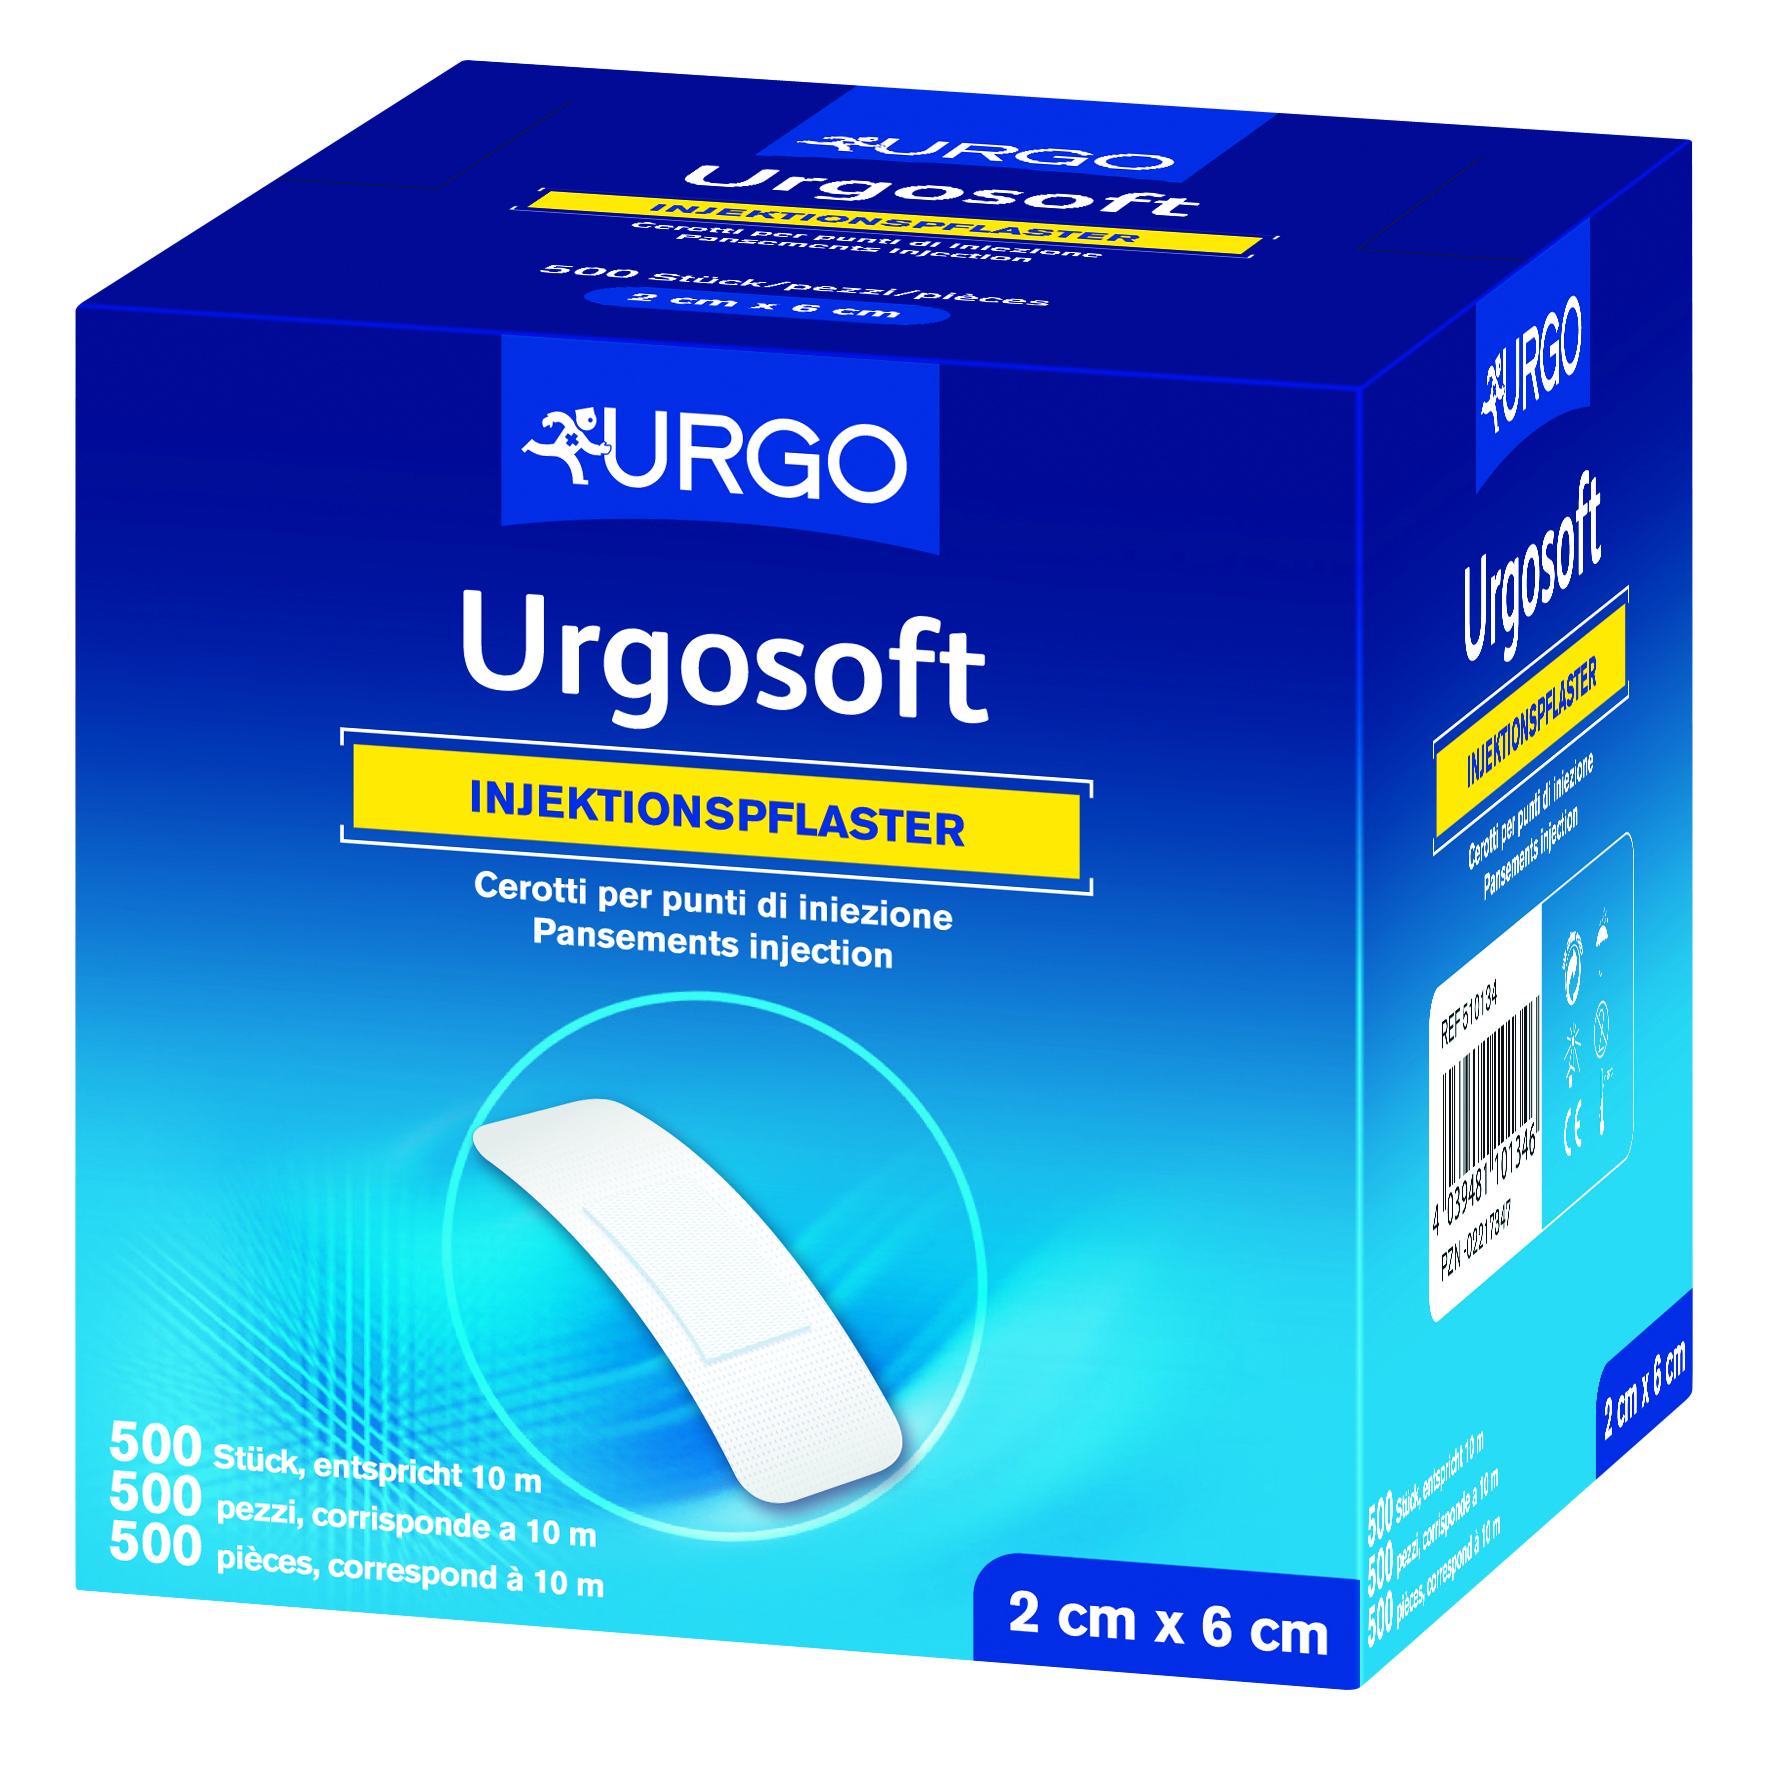 Urgosoft Injektionspflaster, 2 x 6 cm, weiß, rundum klebend (500 Stck.)